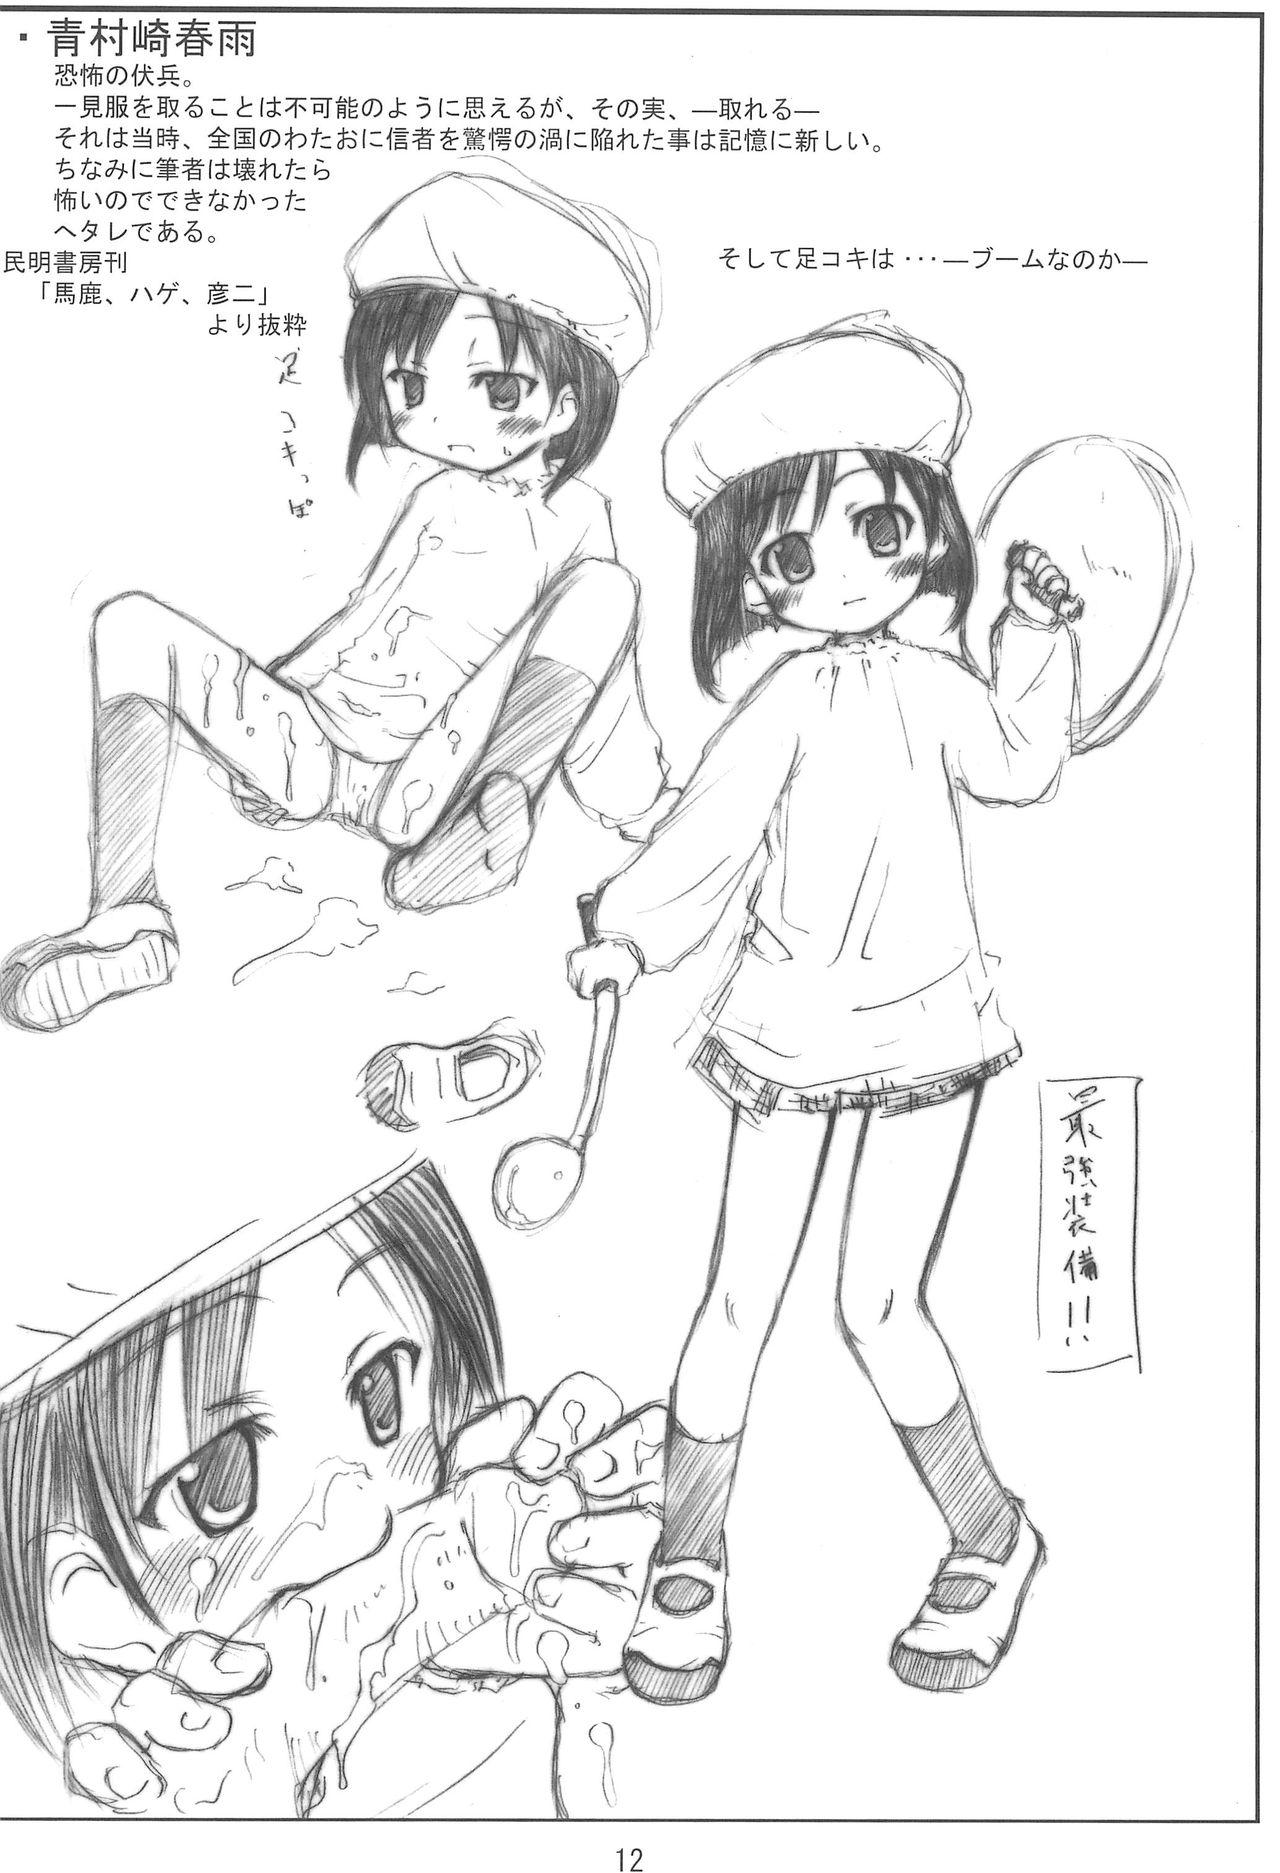 Anal Sex Watavine - Shuukan watashi no onii-chan Licca vignette Rico - Page 12